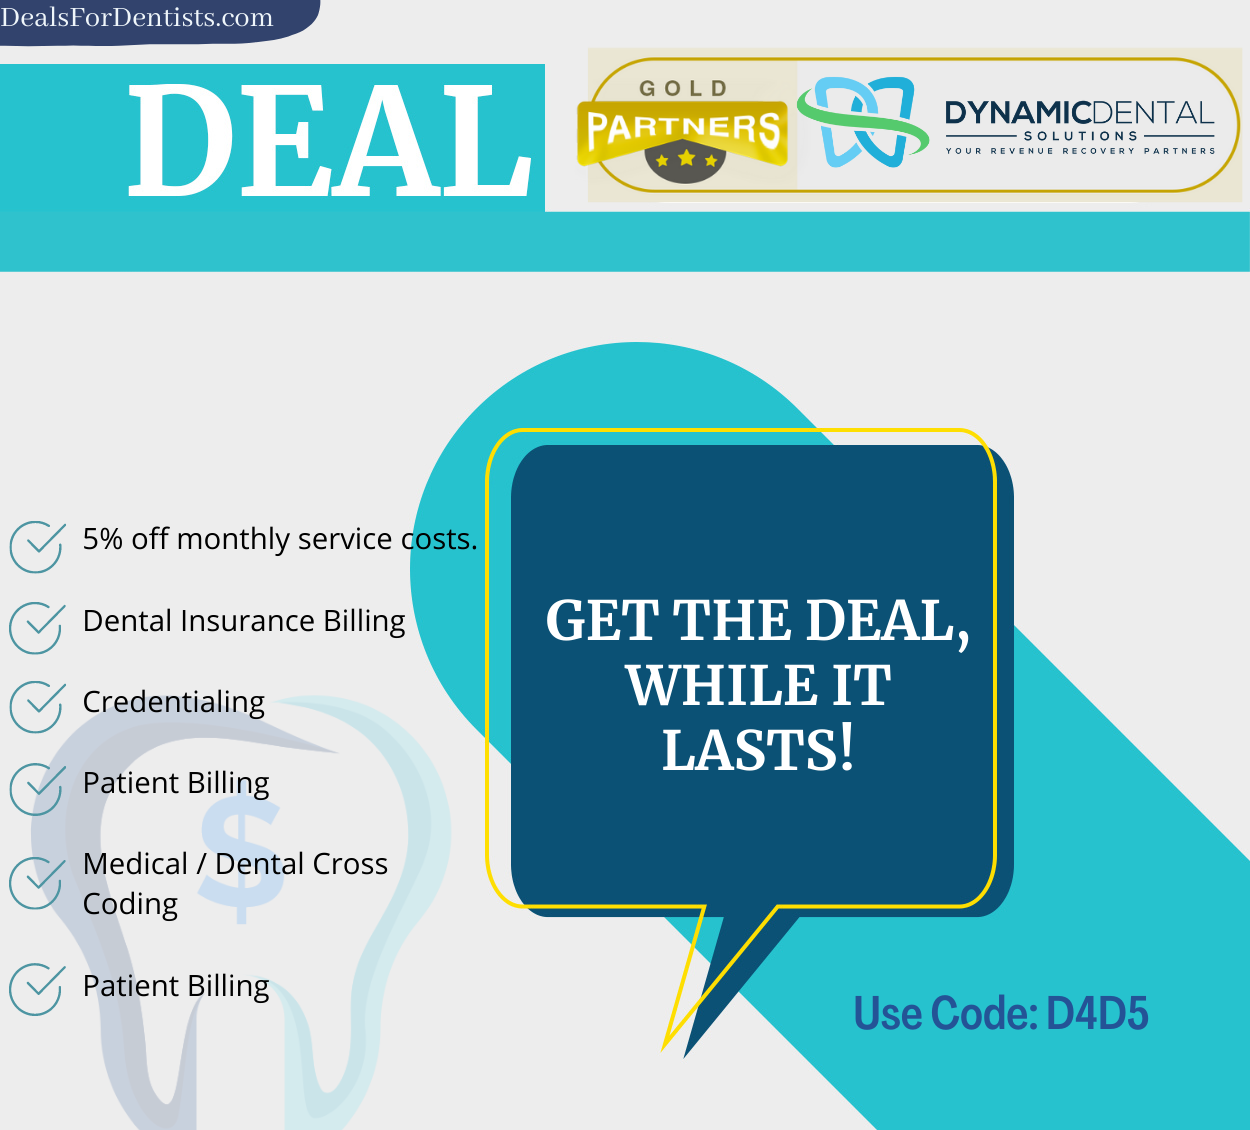 DDS Deal